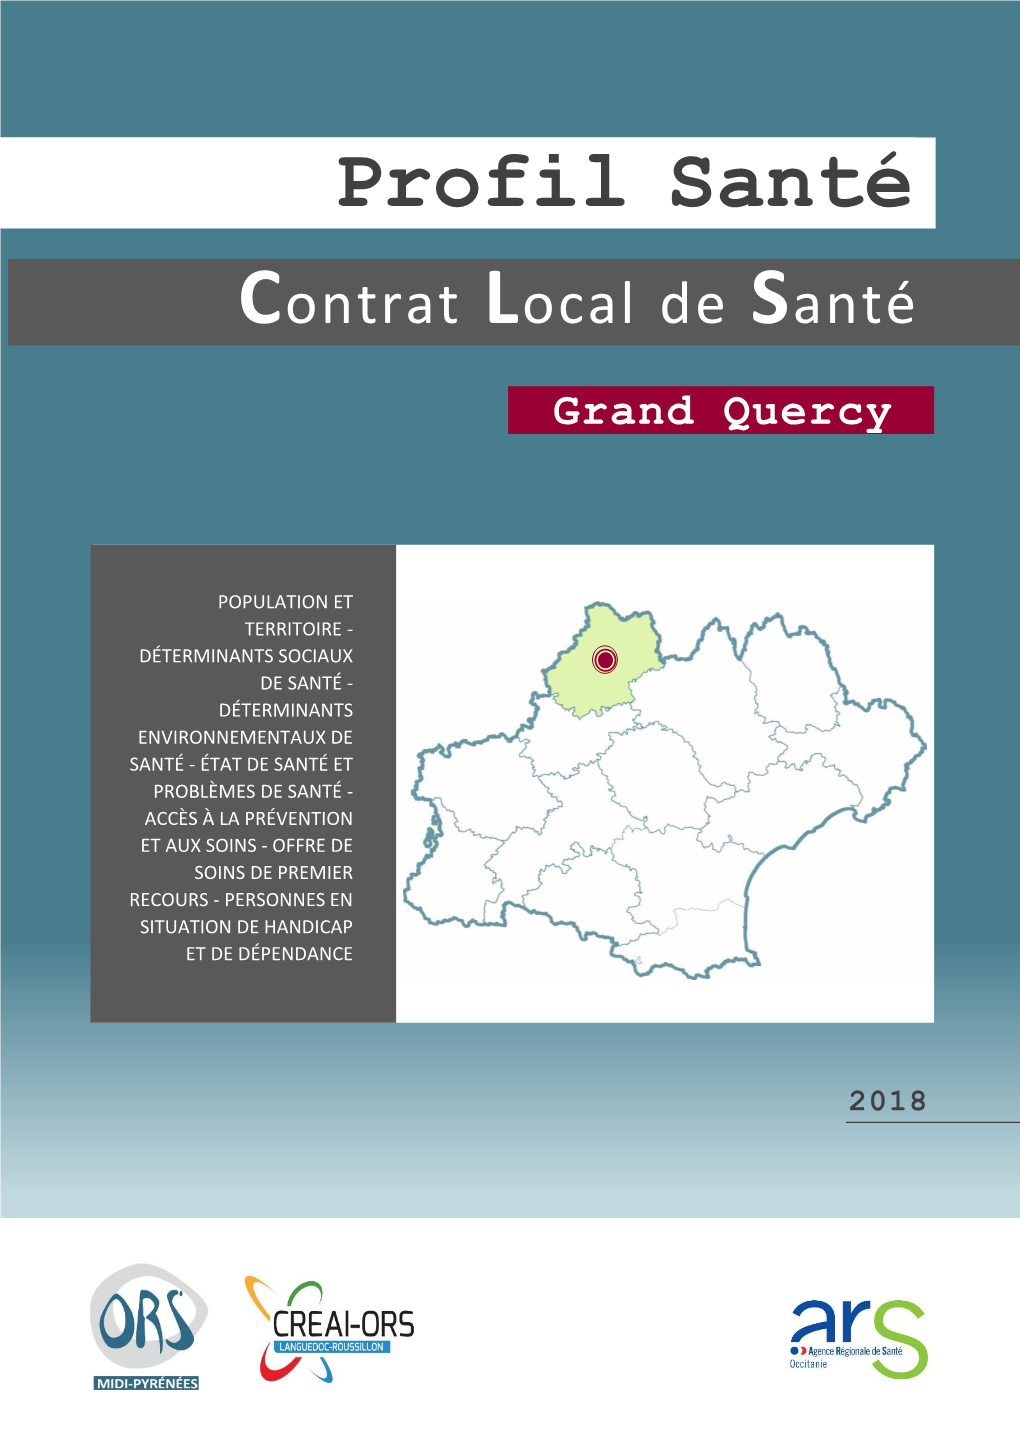 PROFIL SANTÉ GRAND QUERCY ORS Midi-Pyrénées – CREAI-ORS Languedoc-Roussillon Chapitre